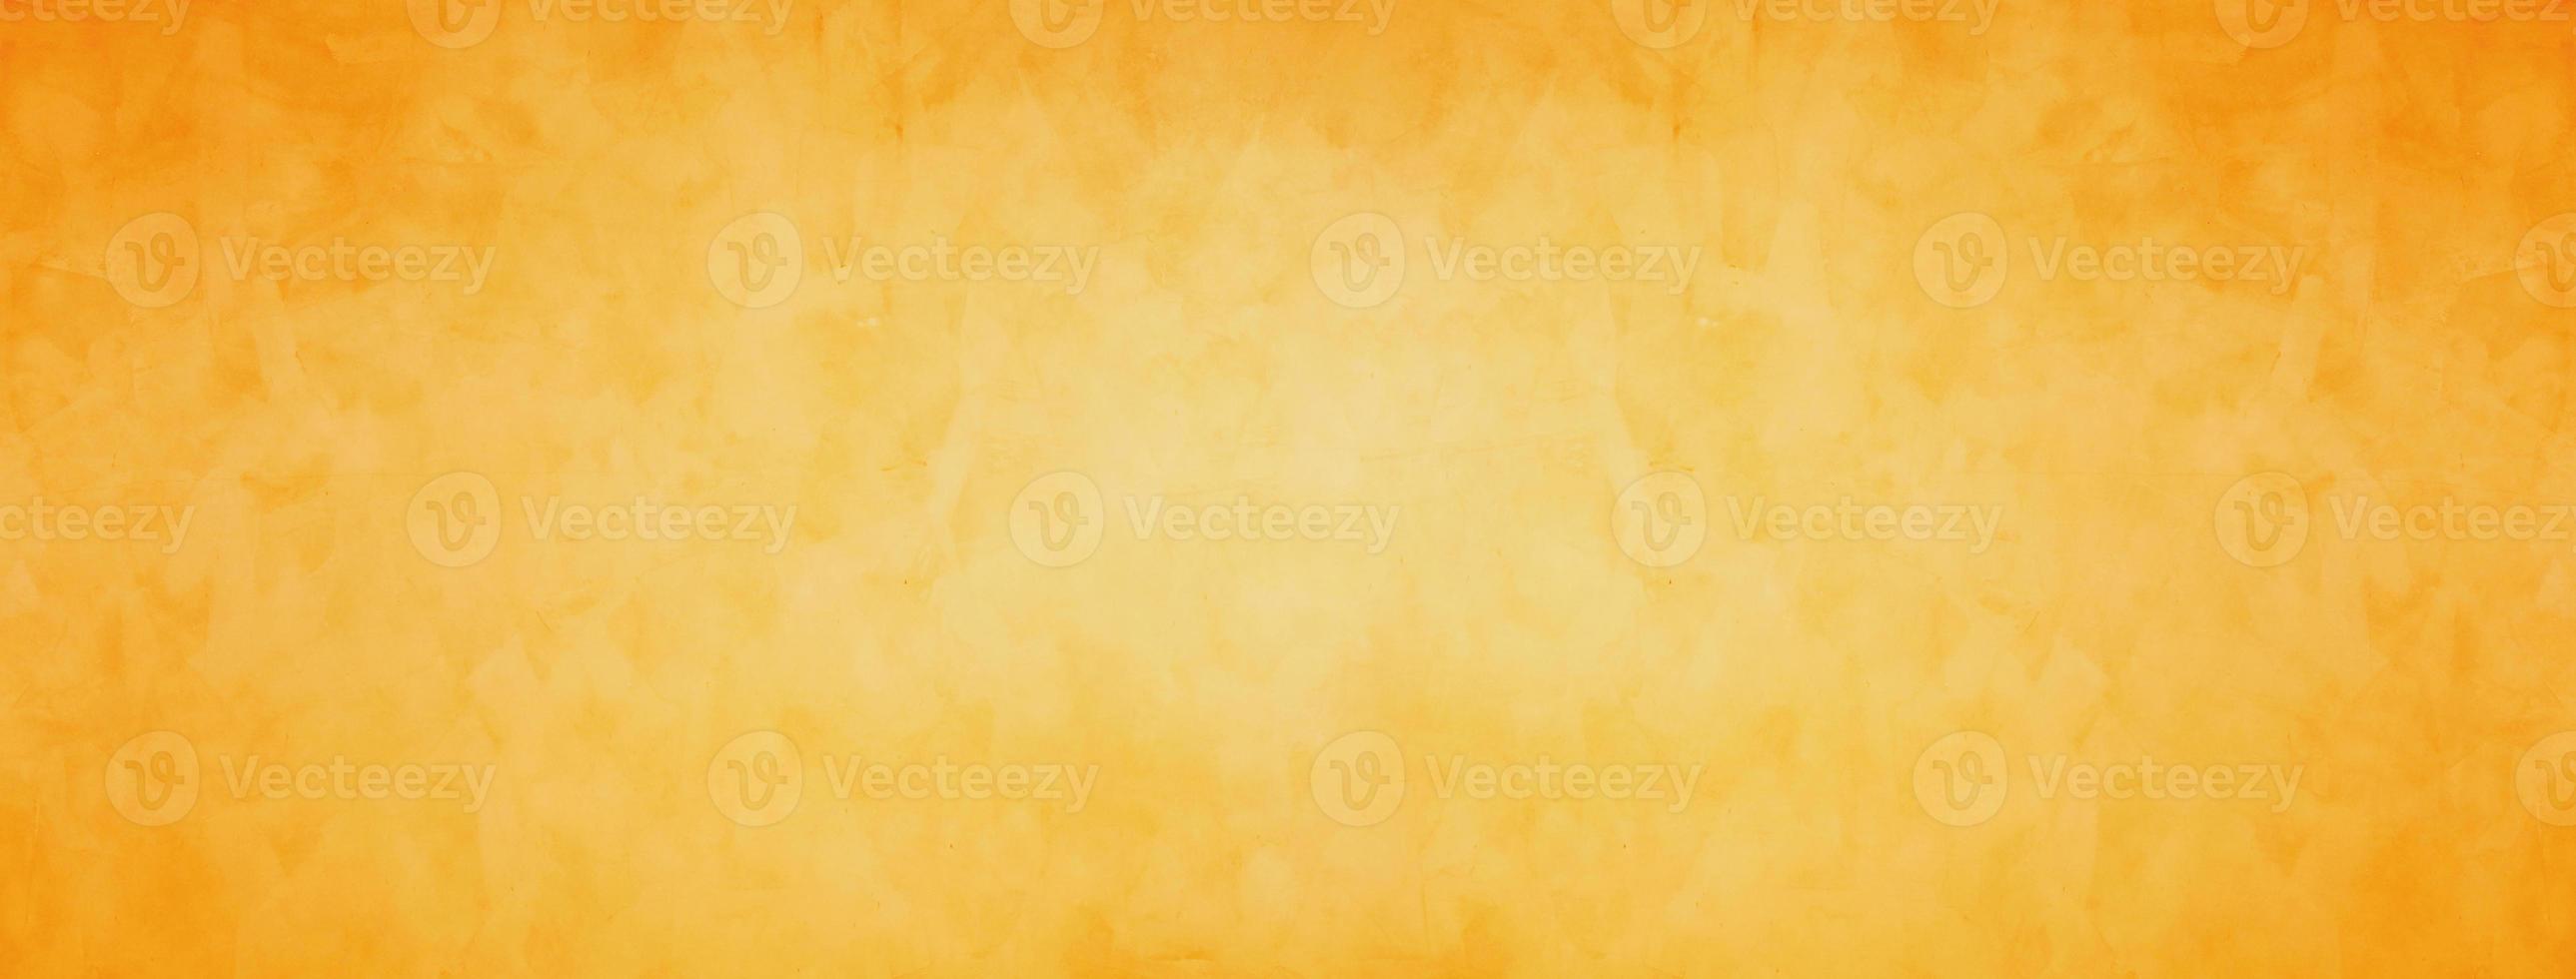 oranje en gele grunge cement achtergrond foto